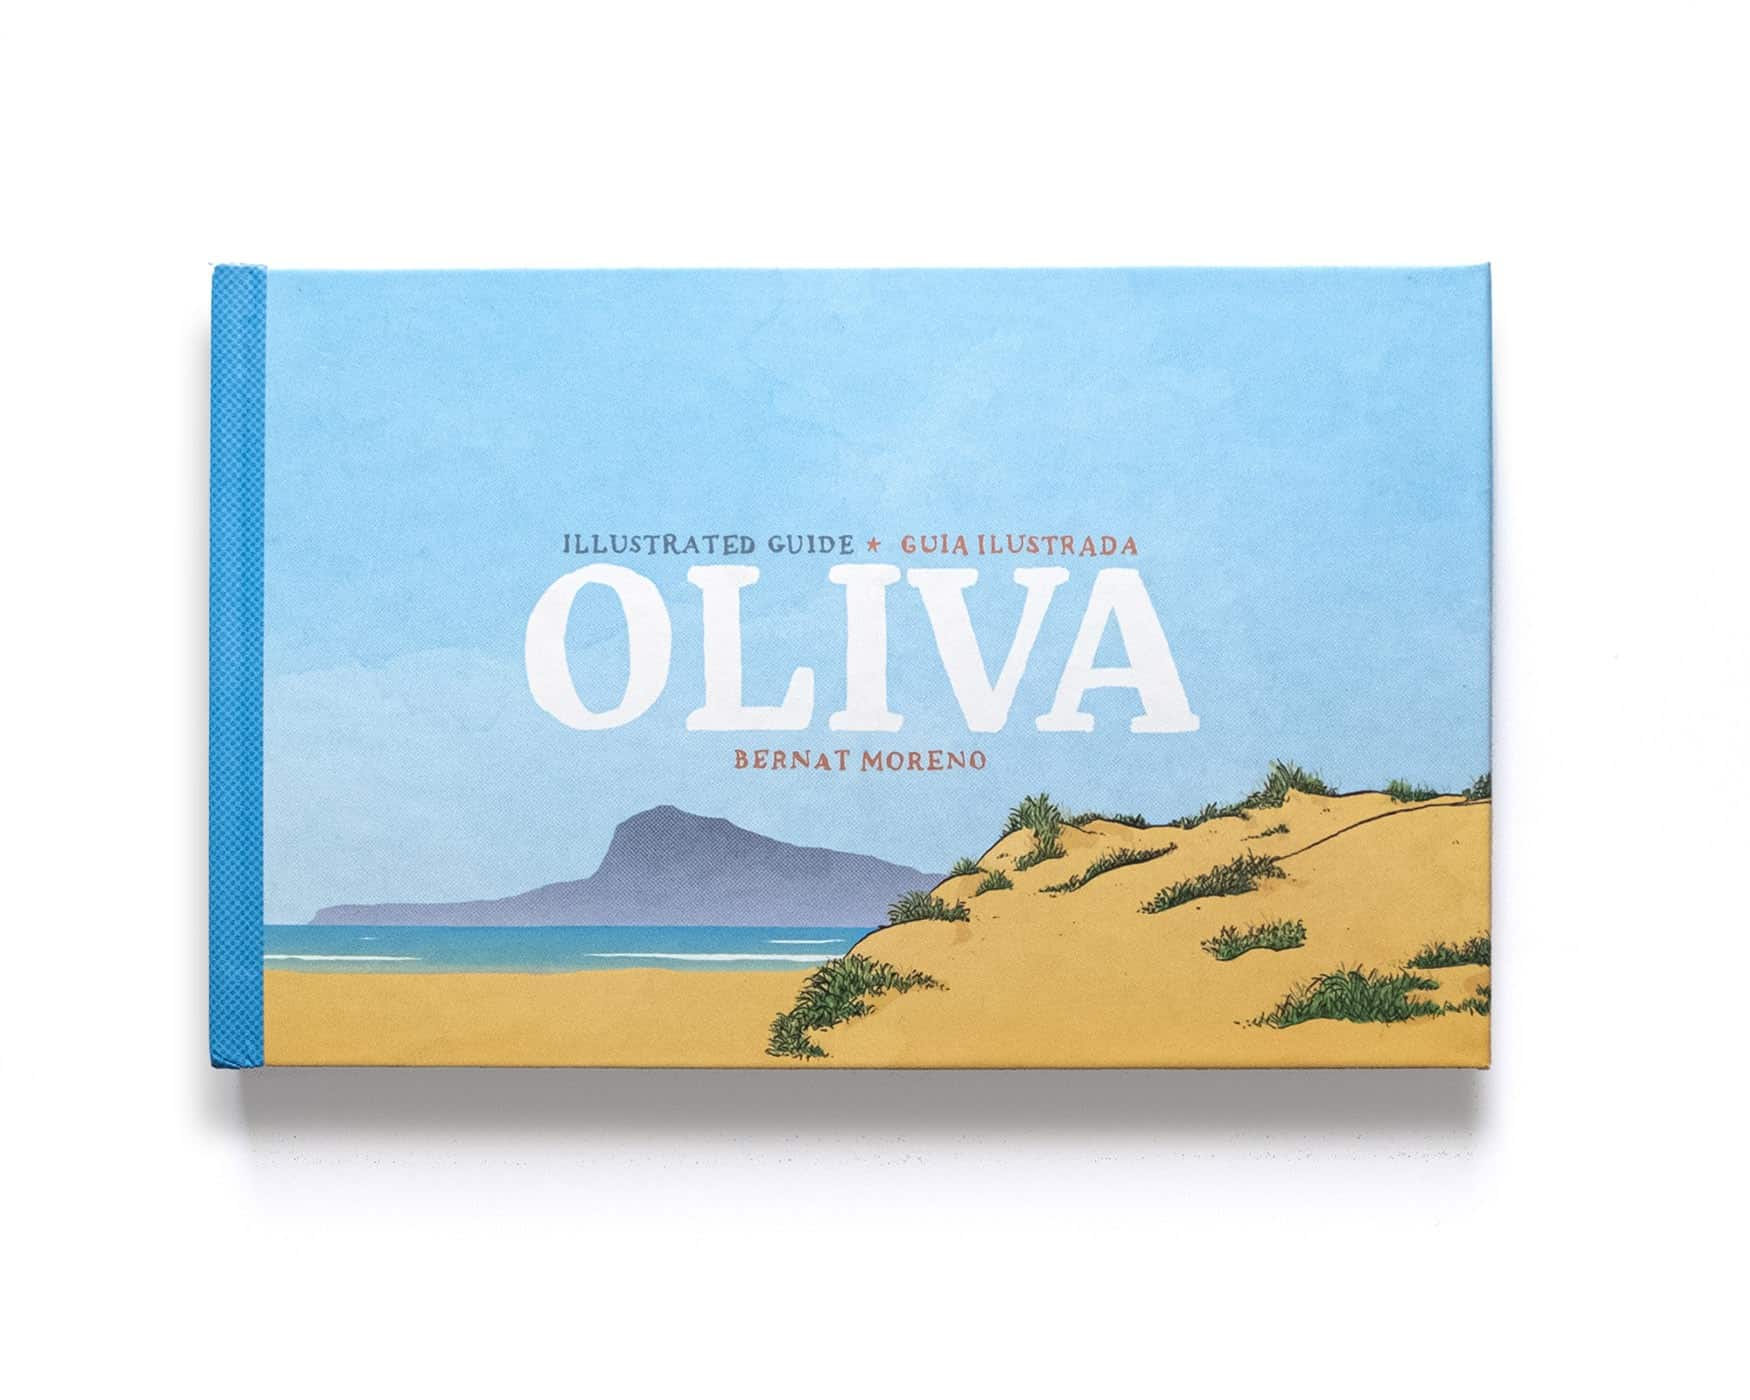 Portada del libro de ilustraciones de Oliva, provincia de valencia. Acuarelas, urban sketchers, playa de Oliva.